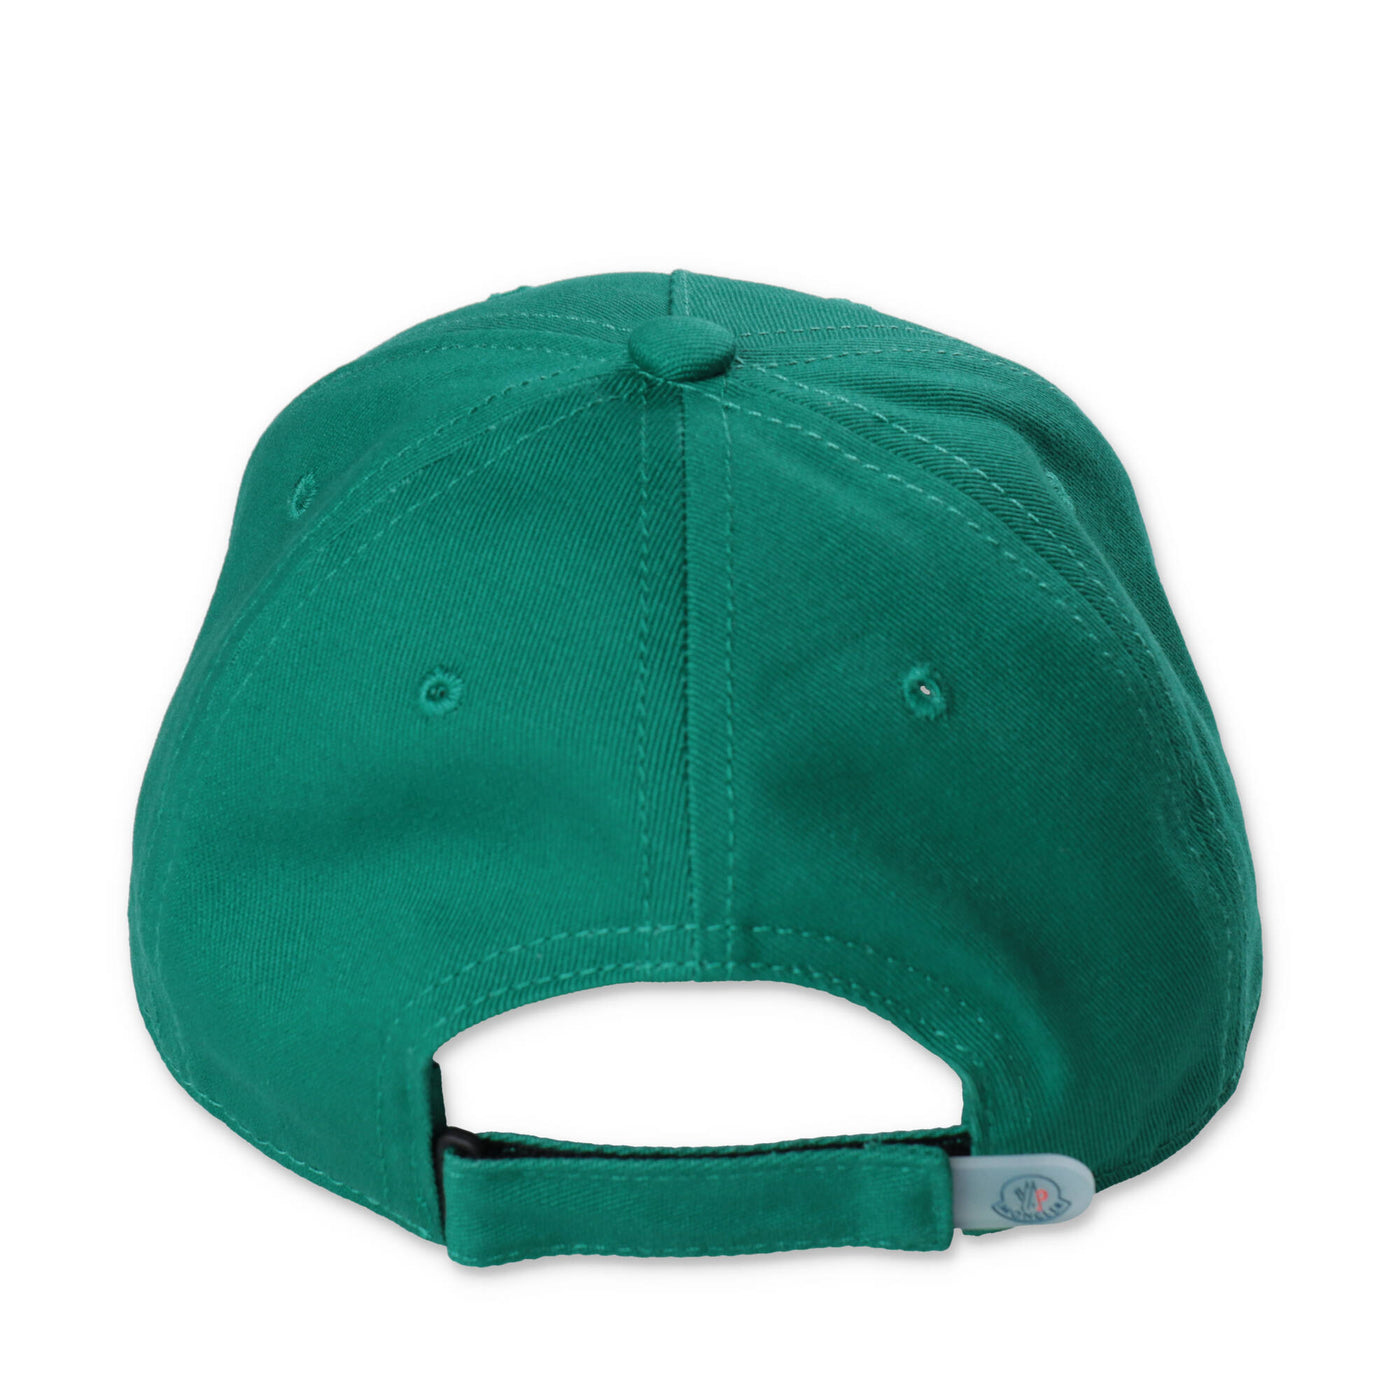 Green cotton canvas boy MONCLER baseball cap